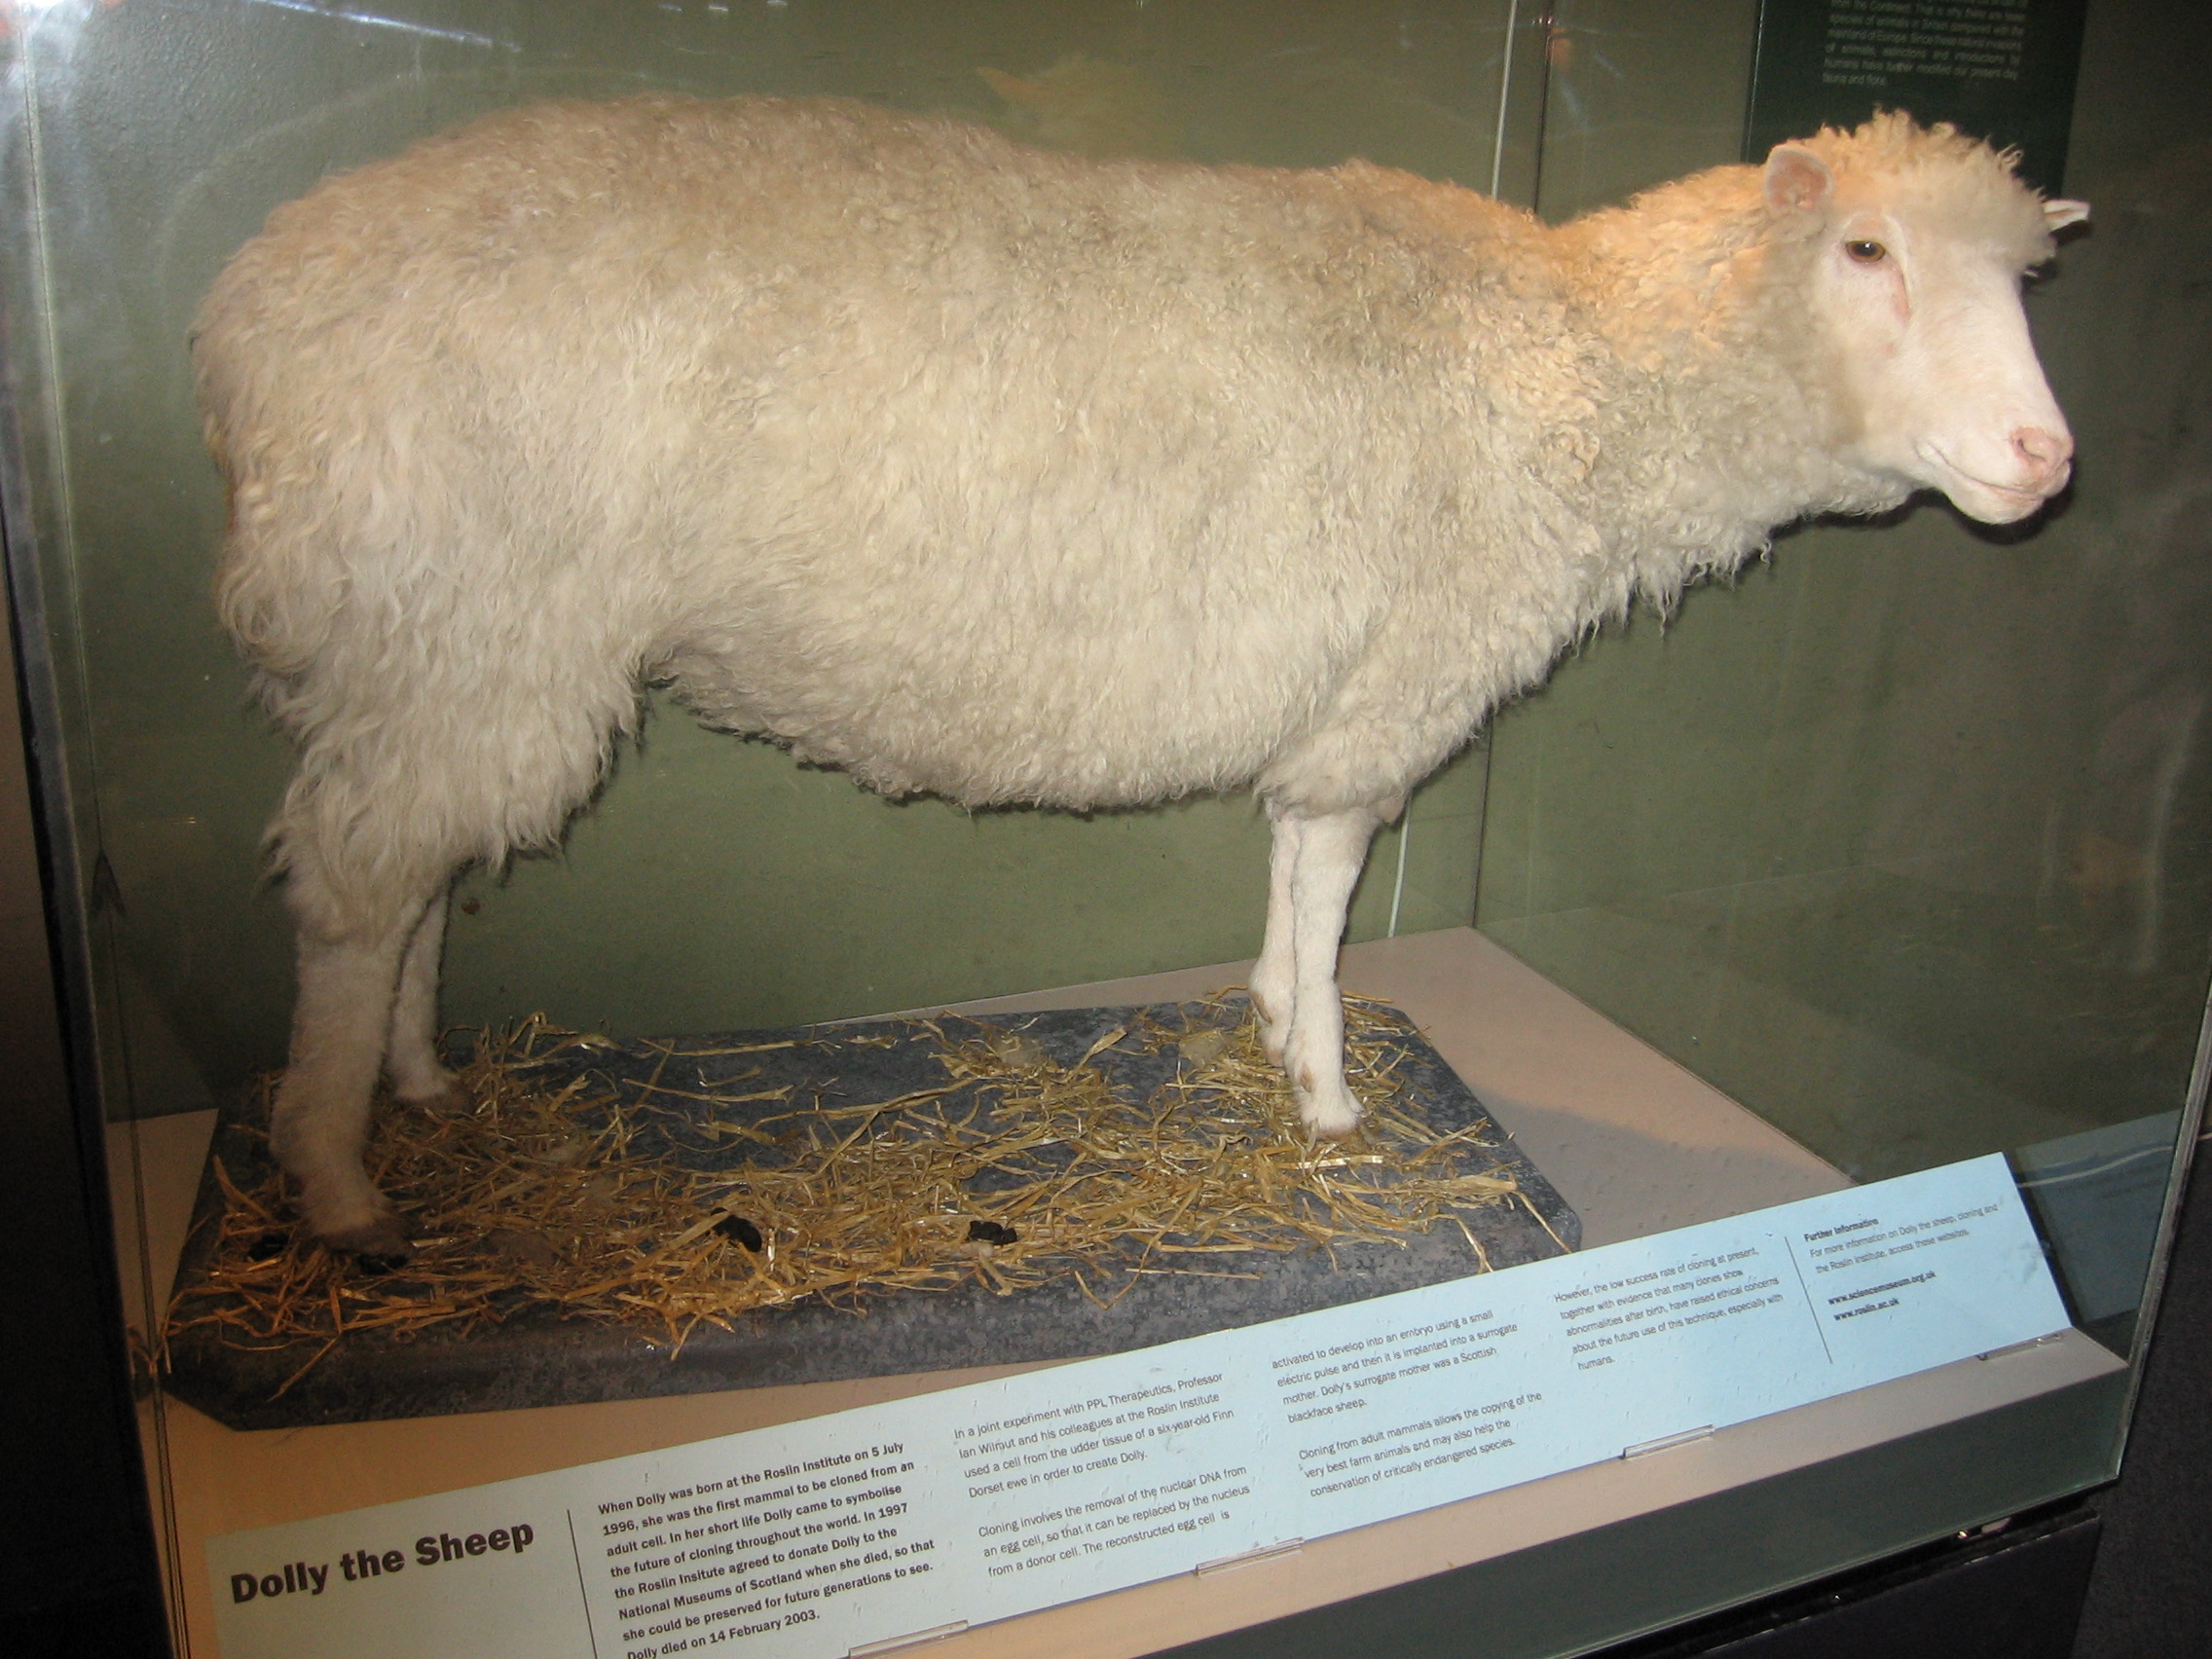 Het schaap Dolly